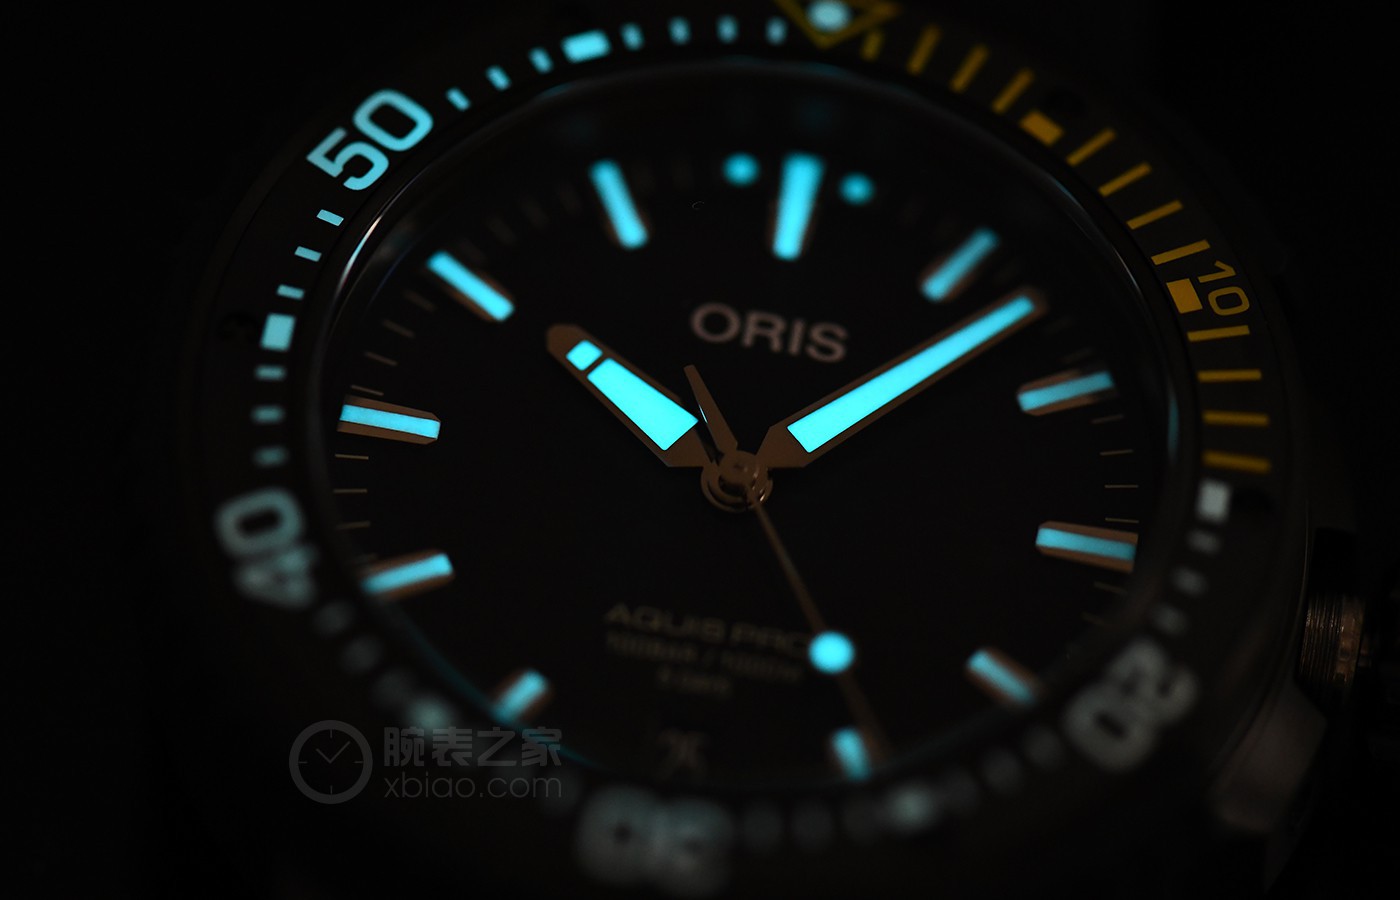 为专业潜水设计 品鉴豪利时AquisPro 400自主机芯日历腕表